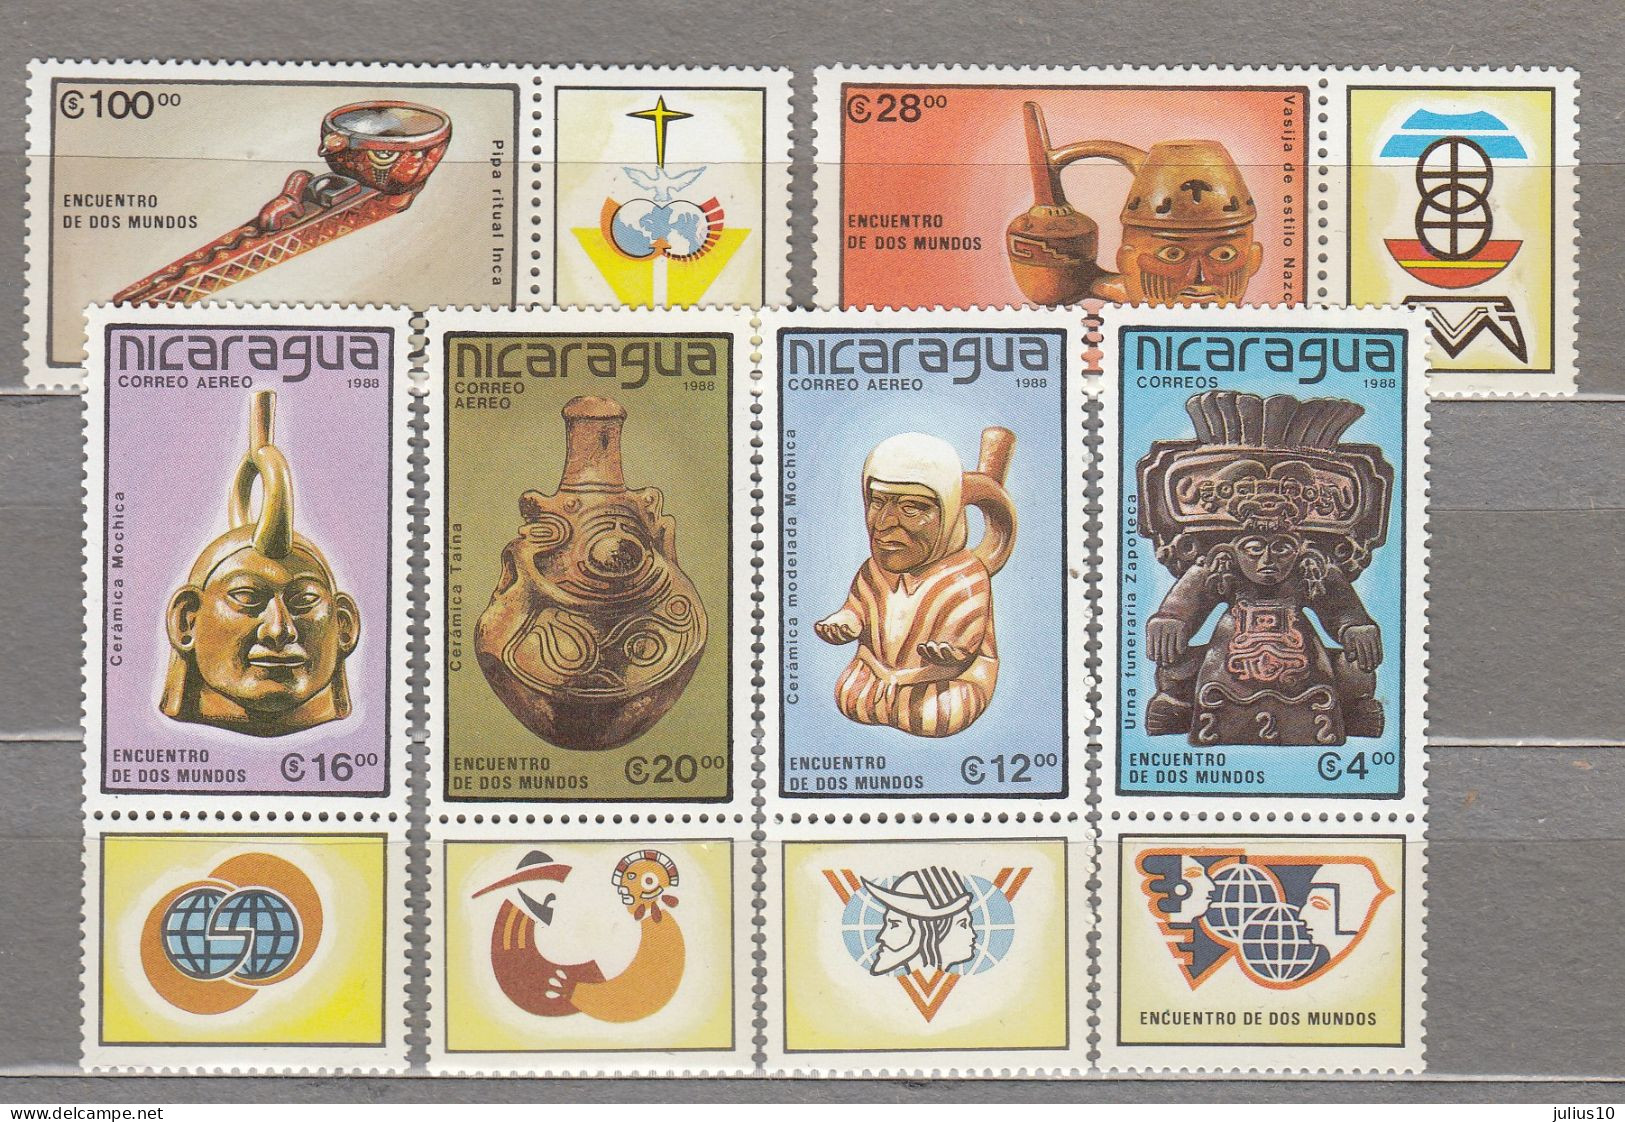 NICARAGUA 1988 History Archeology Mi 2917-2922 MNH(**) #34081 - Nicaragua